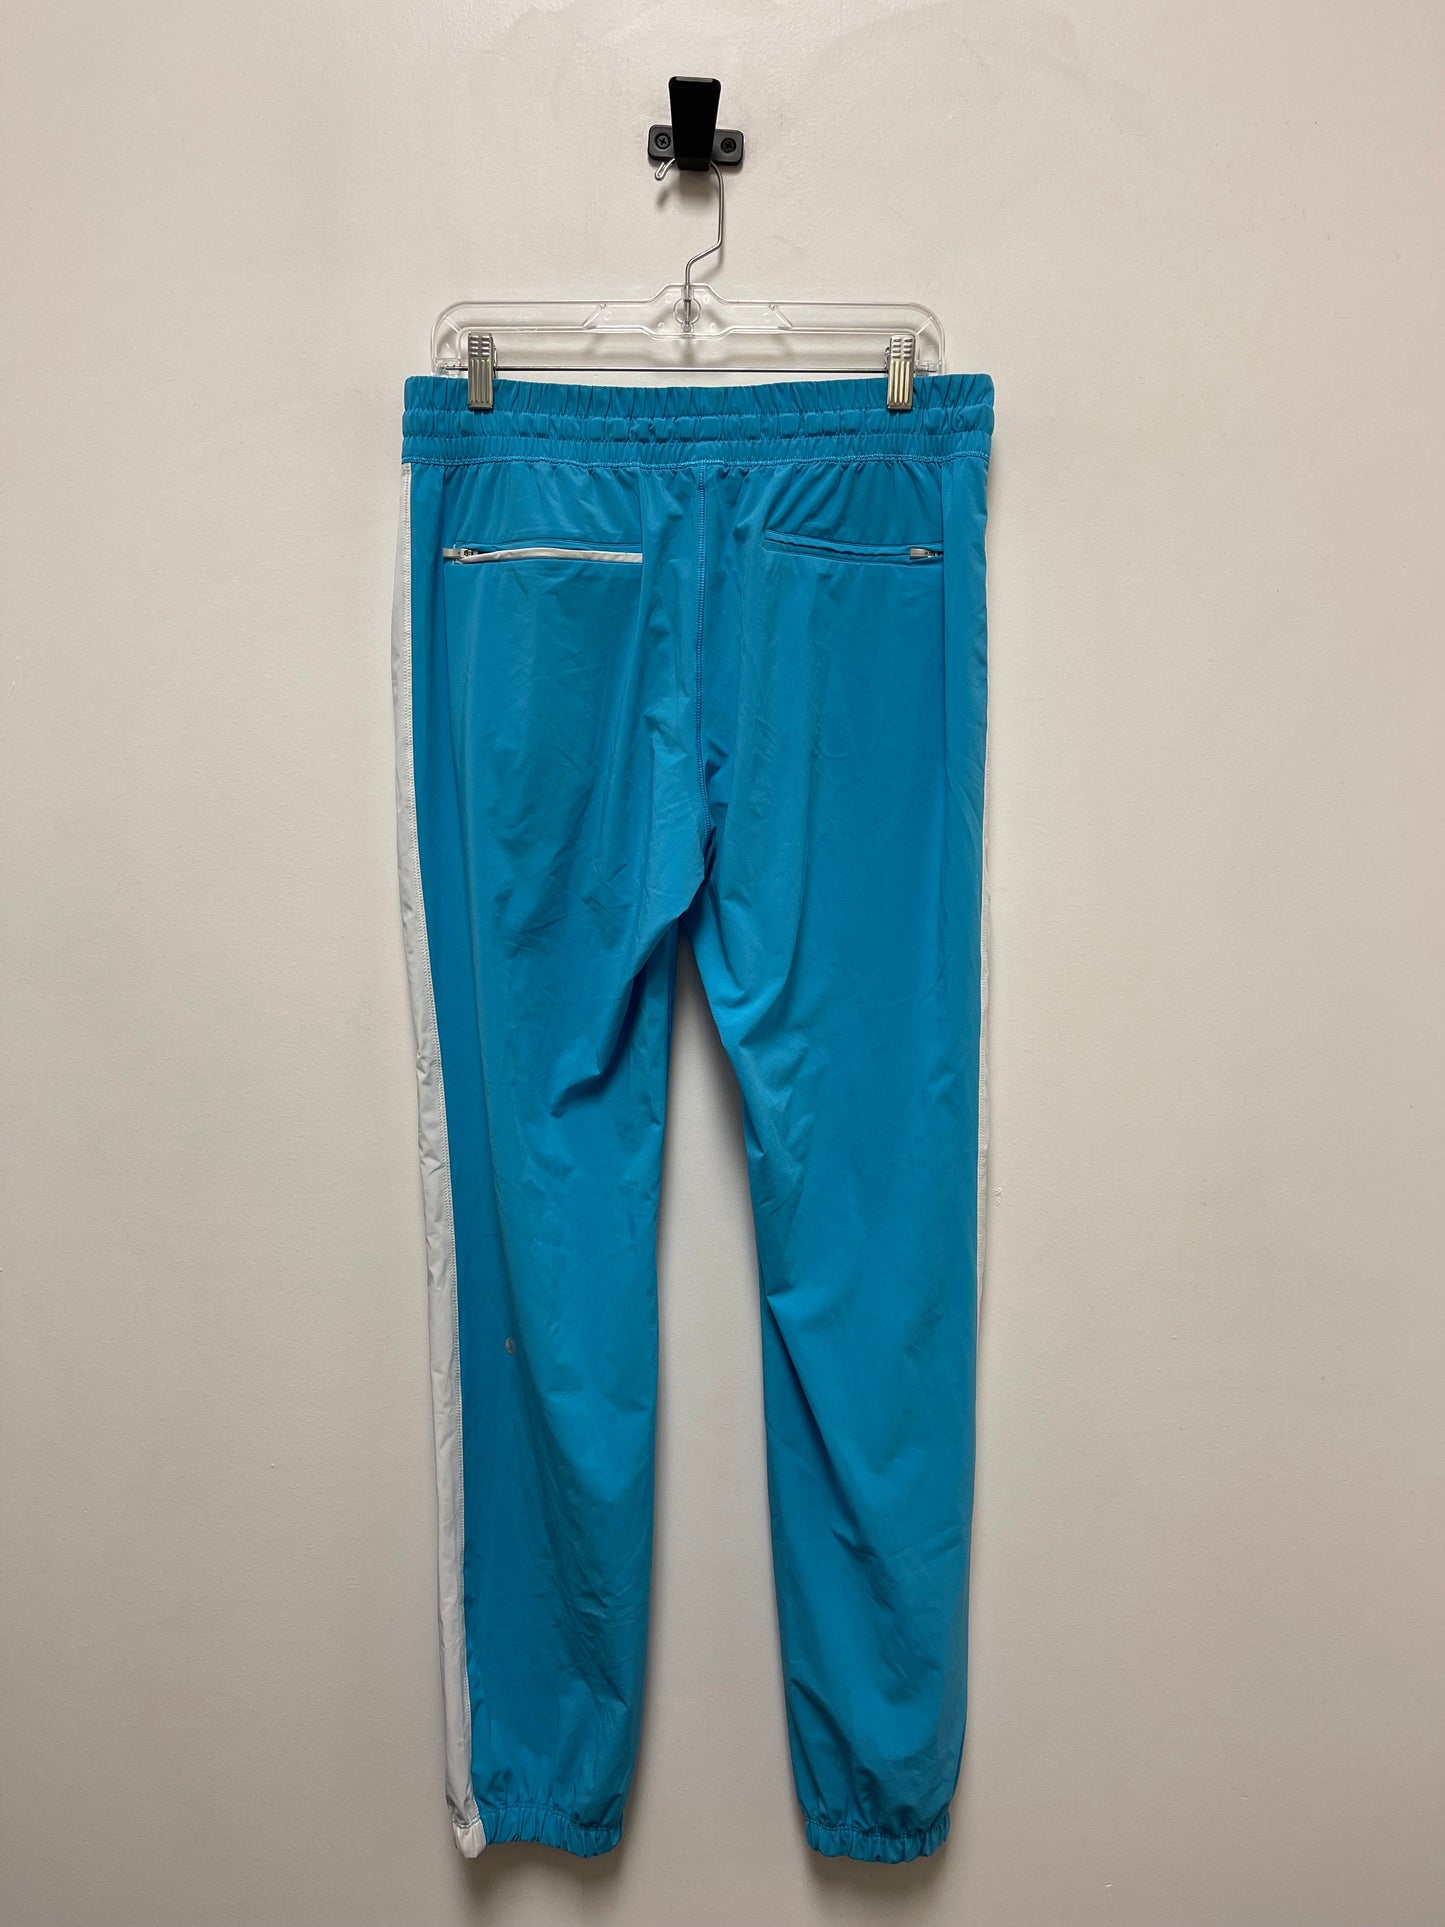 Blue Athletic Pants Lululemon, Size 10